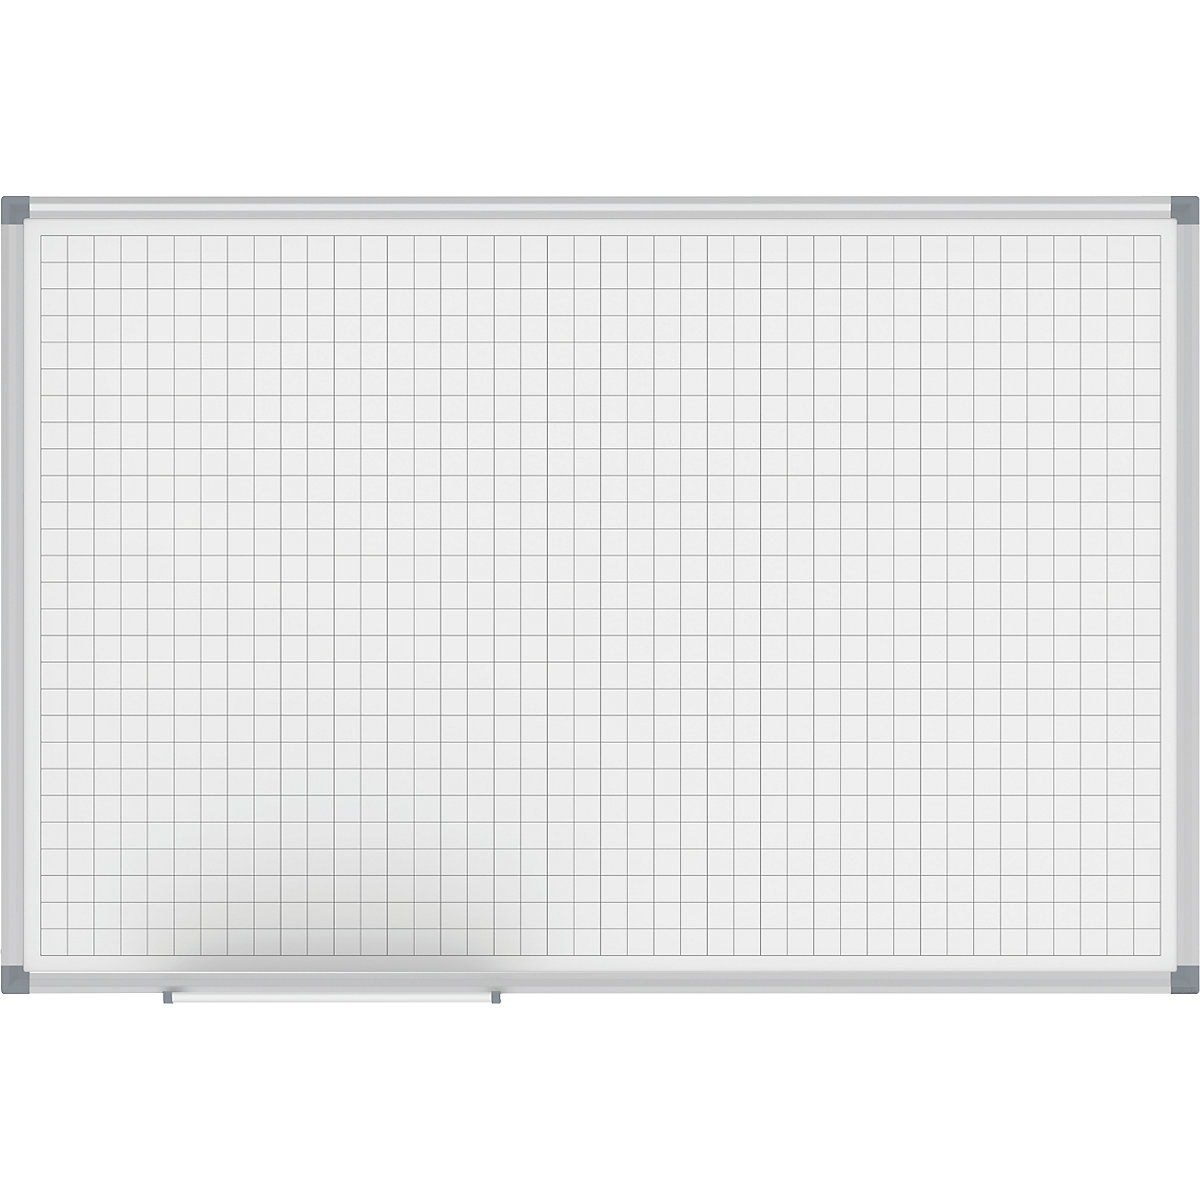 Stock Bureau - MAUL Tableau liège MAULstandard cadre alu 100 x 150 cm Gris